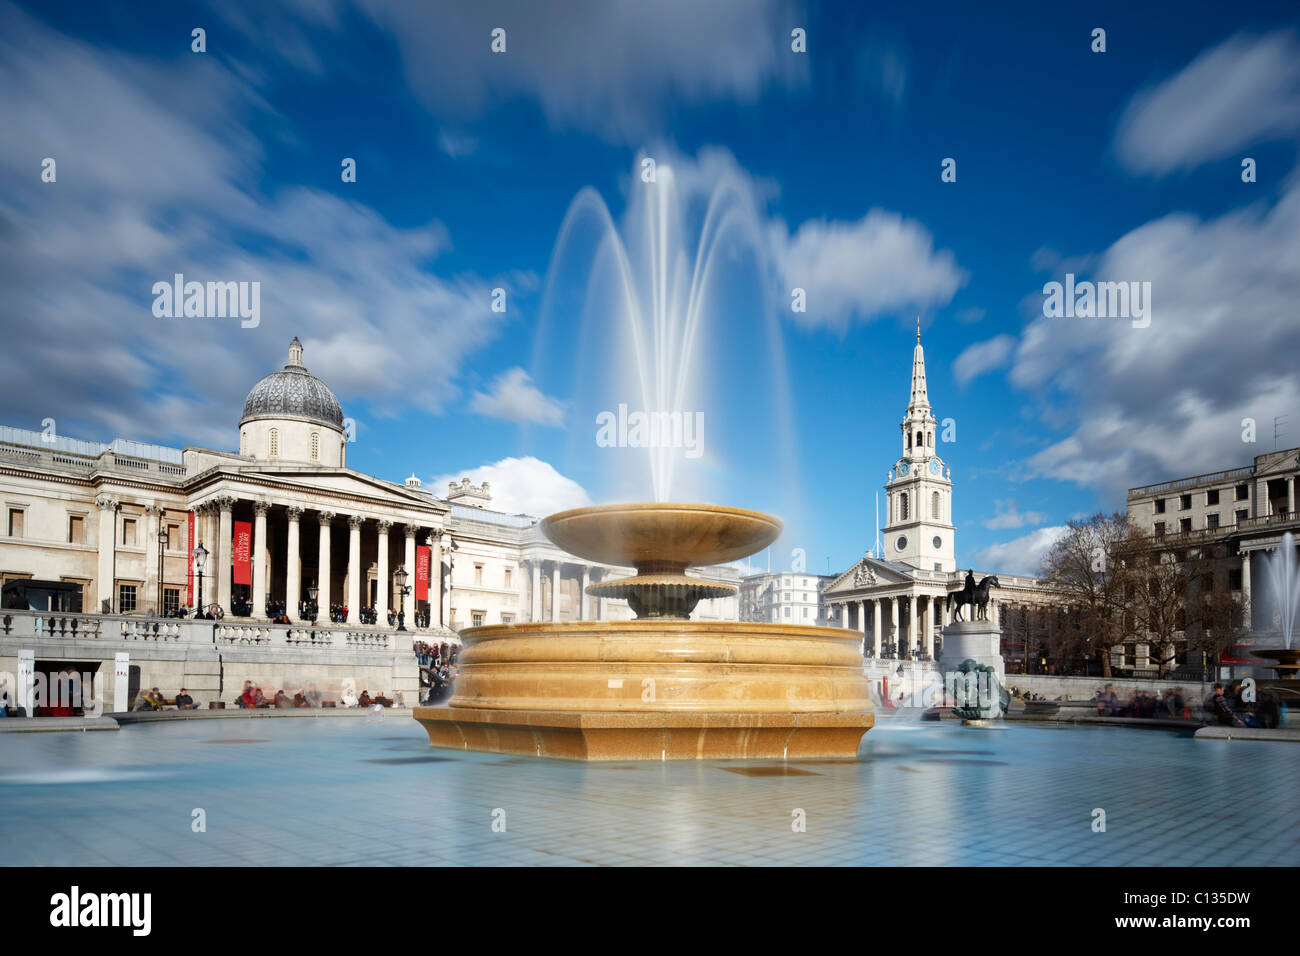 Trafalgar Square - Centre de Londres. L'exposition longue mouvement rendu dans les deux fontaines et la couverture nuageuse. Banque D'Images